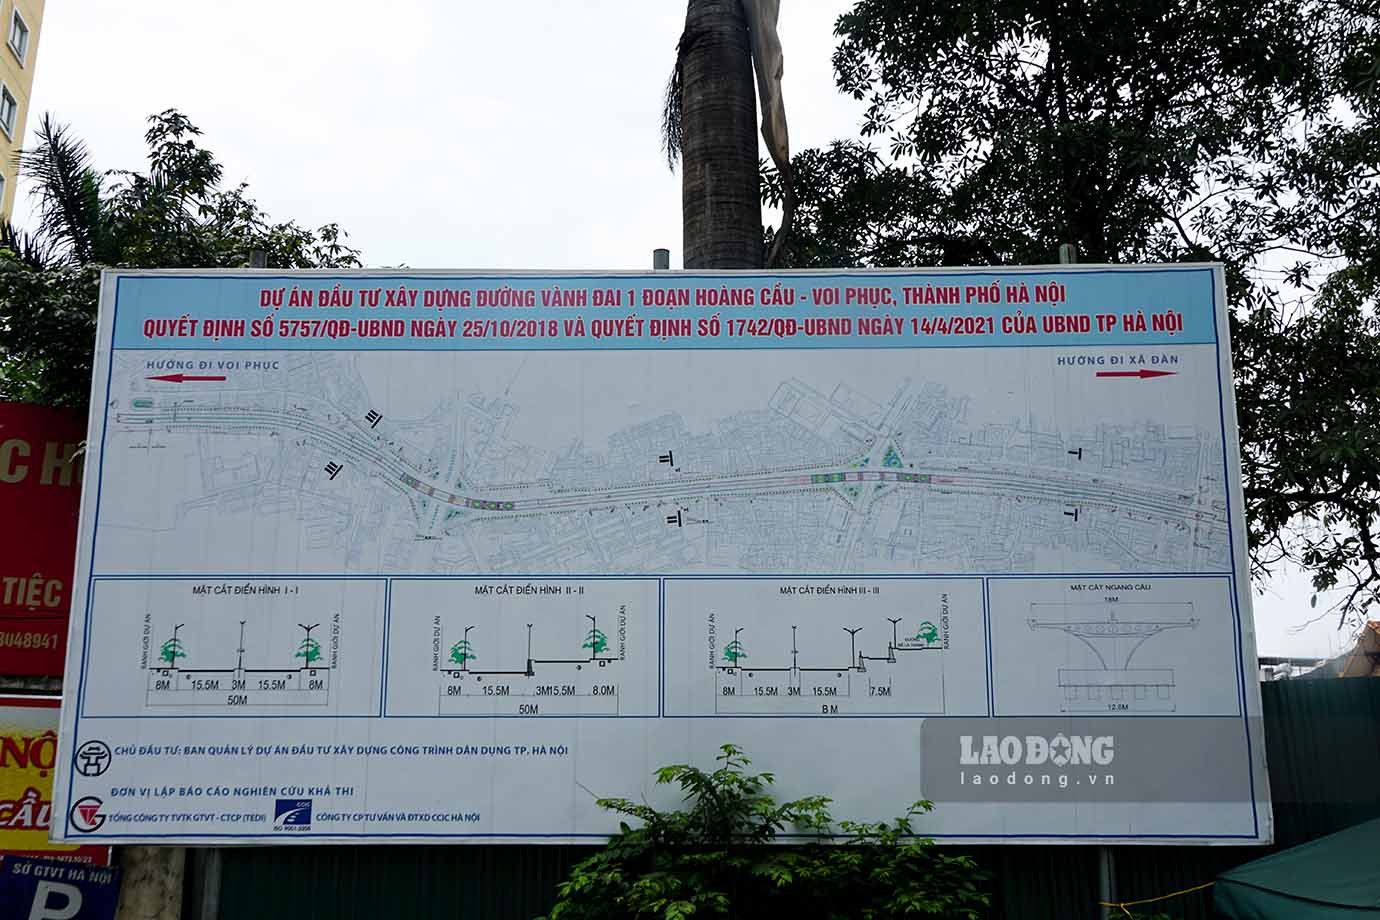 Theo báo cáo của UBND quận Đống Đa, quận đã hoàn thành điều tra, xác nhận nguồn gốc đất toàn bộ 658 trường hợp thuộc địa bàn 4 phường (Cát Linh, Láng Hạ, Láng Thượng, Ô Chợ Dừa).